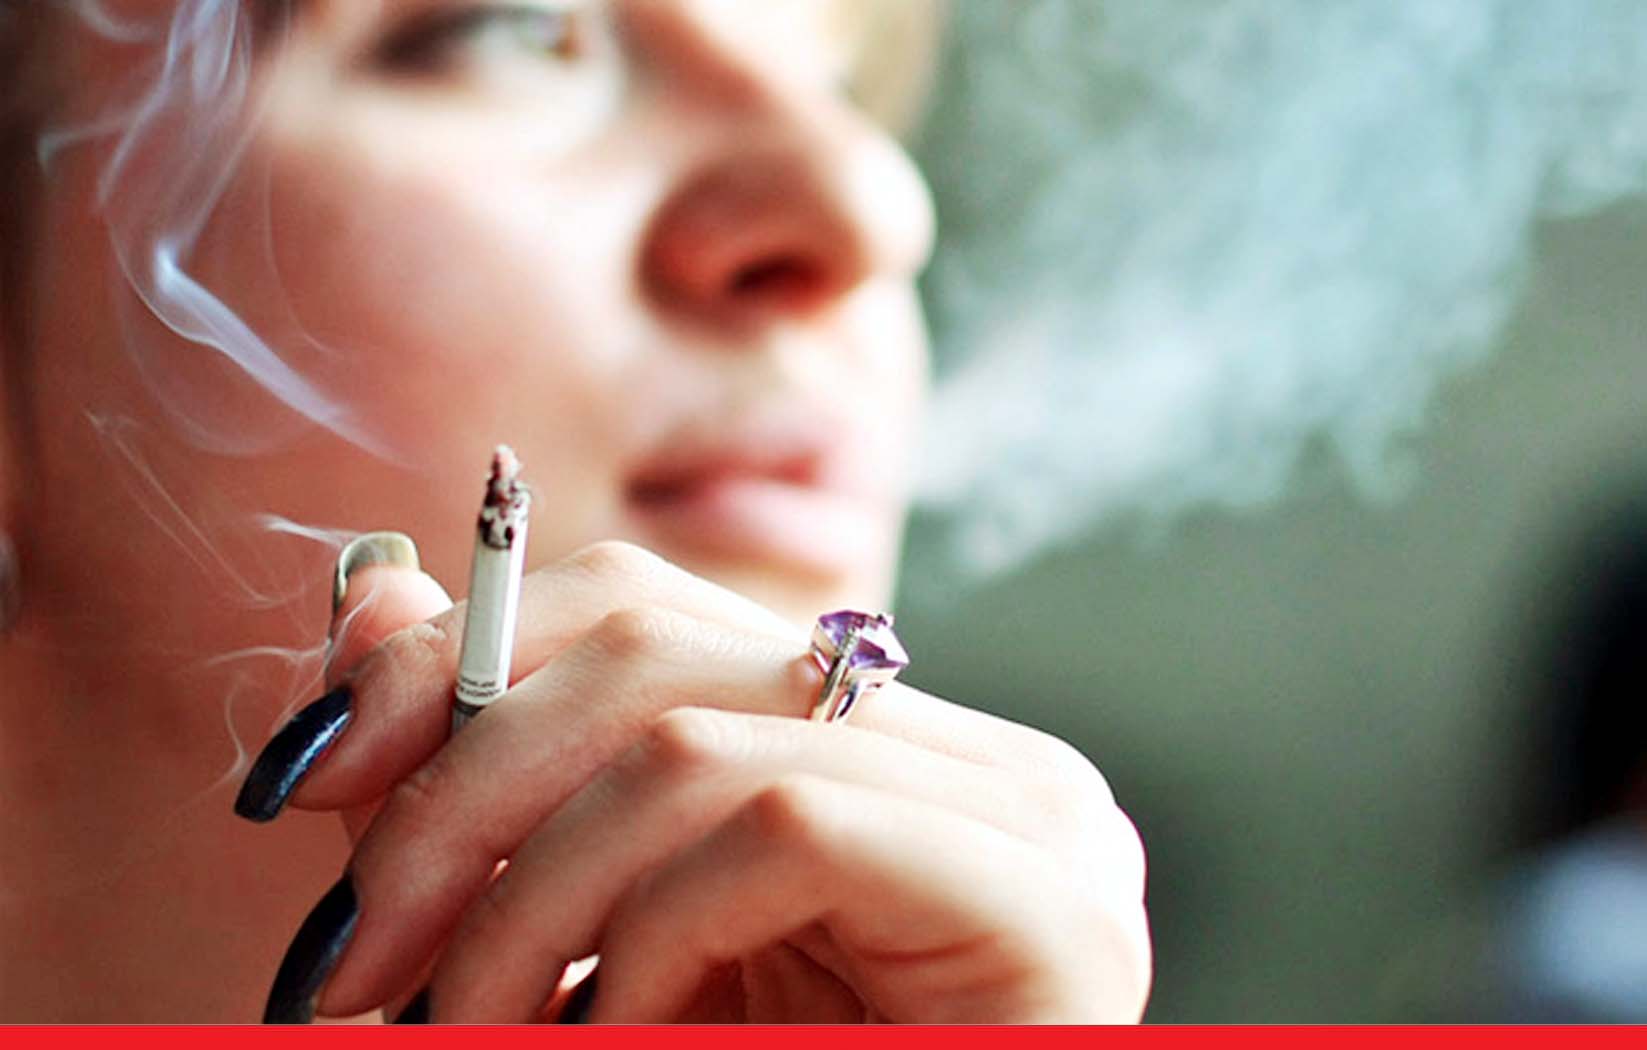 सिगरेट और जंक फूड समेत 5 चीजों से बढ़ता है हार्ट अटैक का खतरा